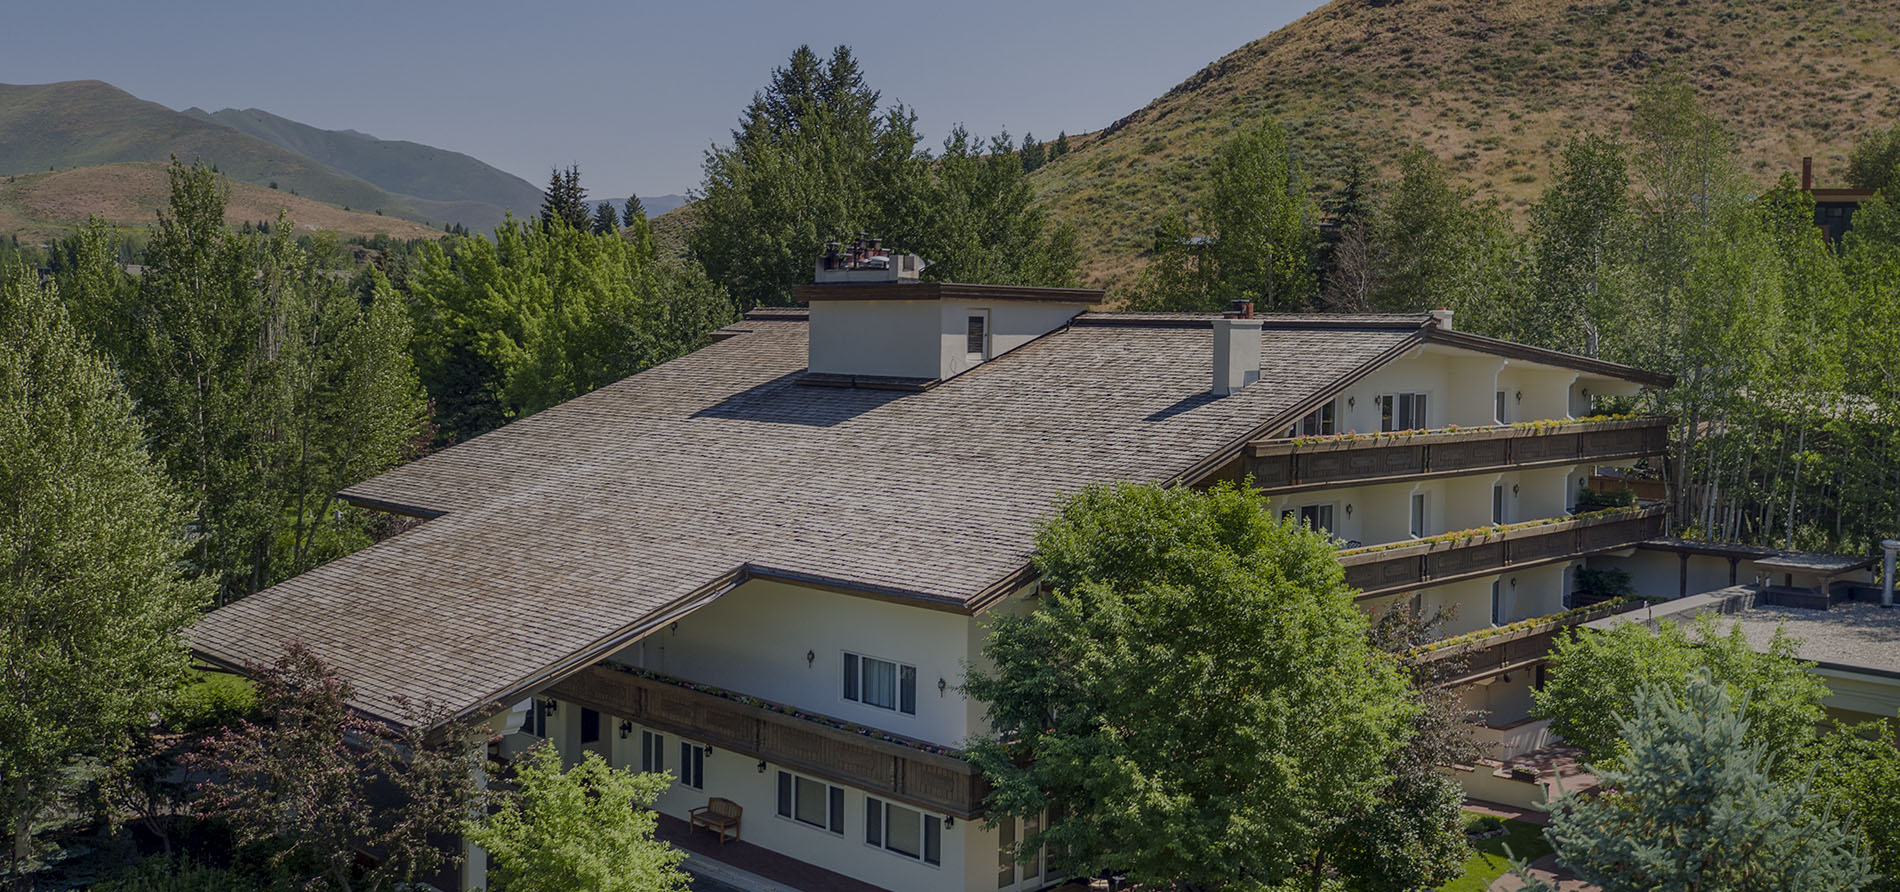 Ketchum Idaho Hotels – Press, Sun Valley Hotels